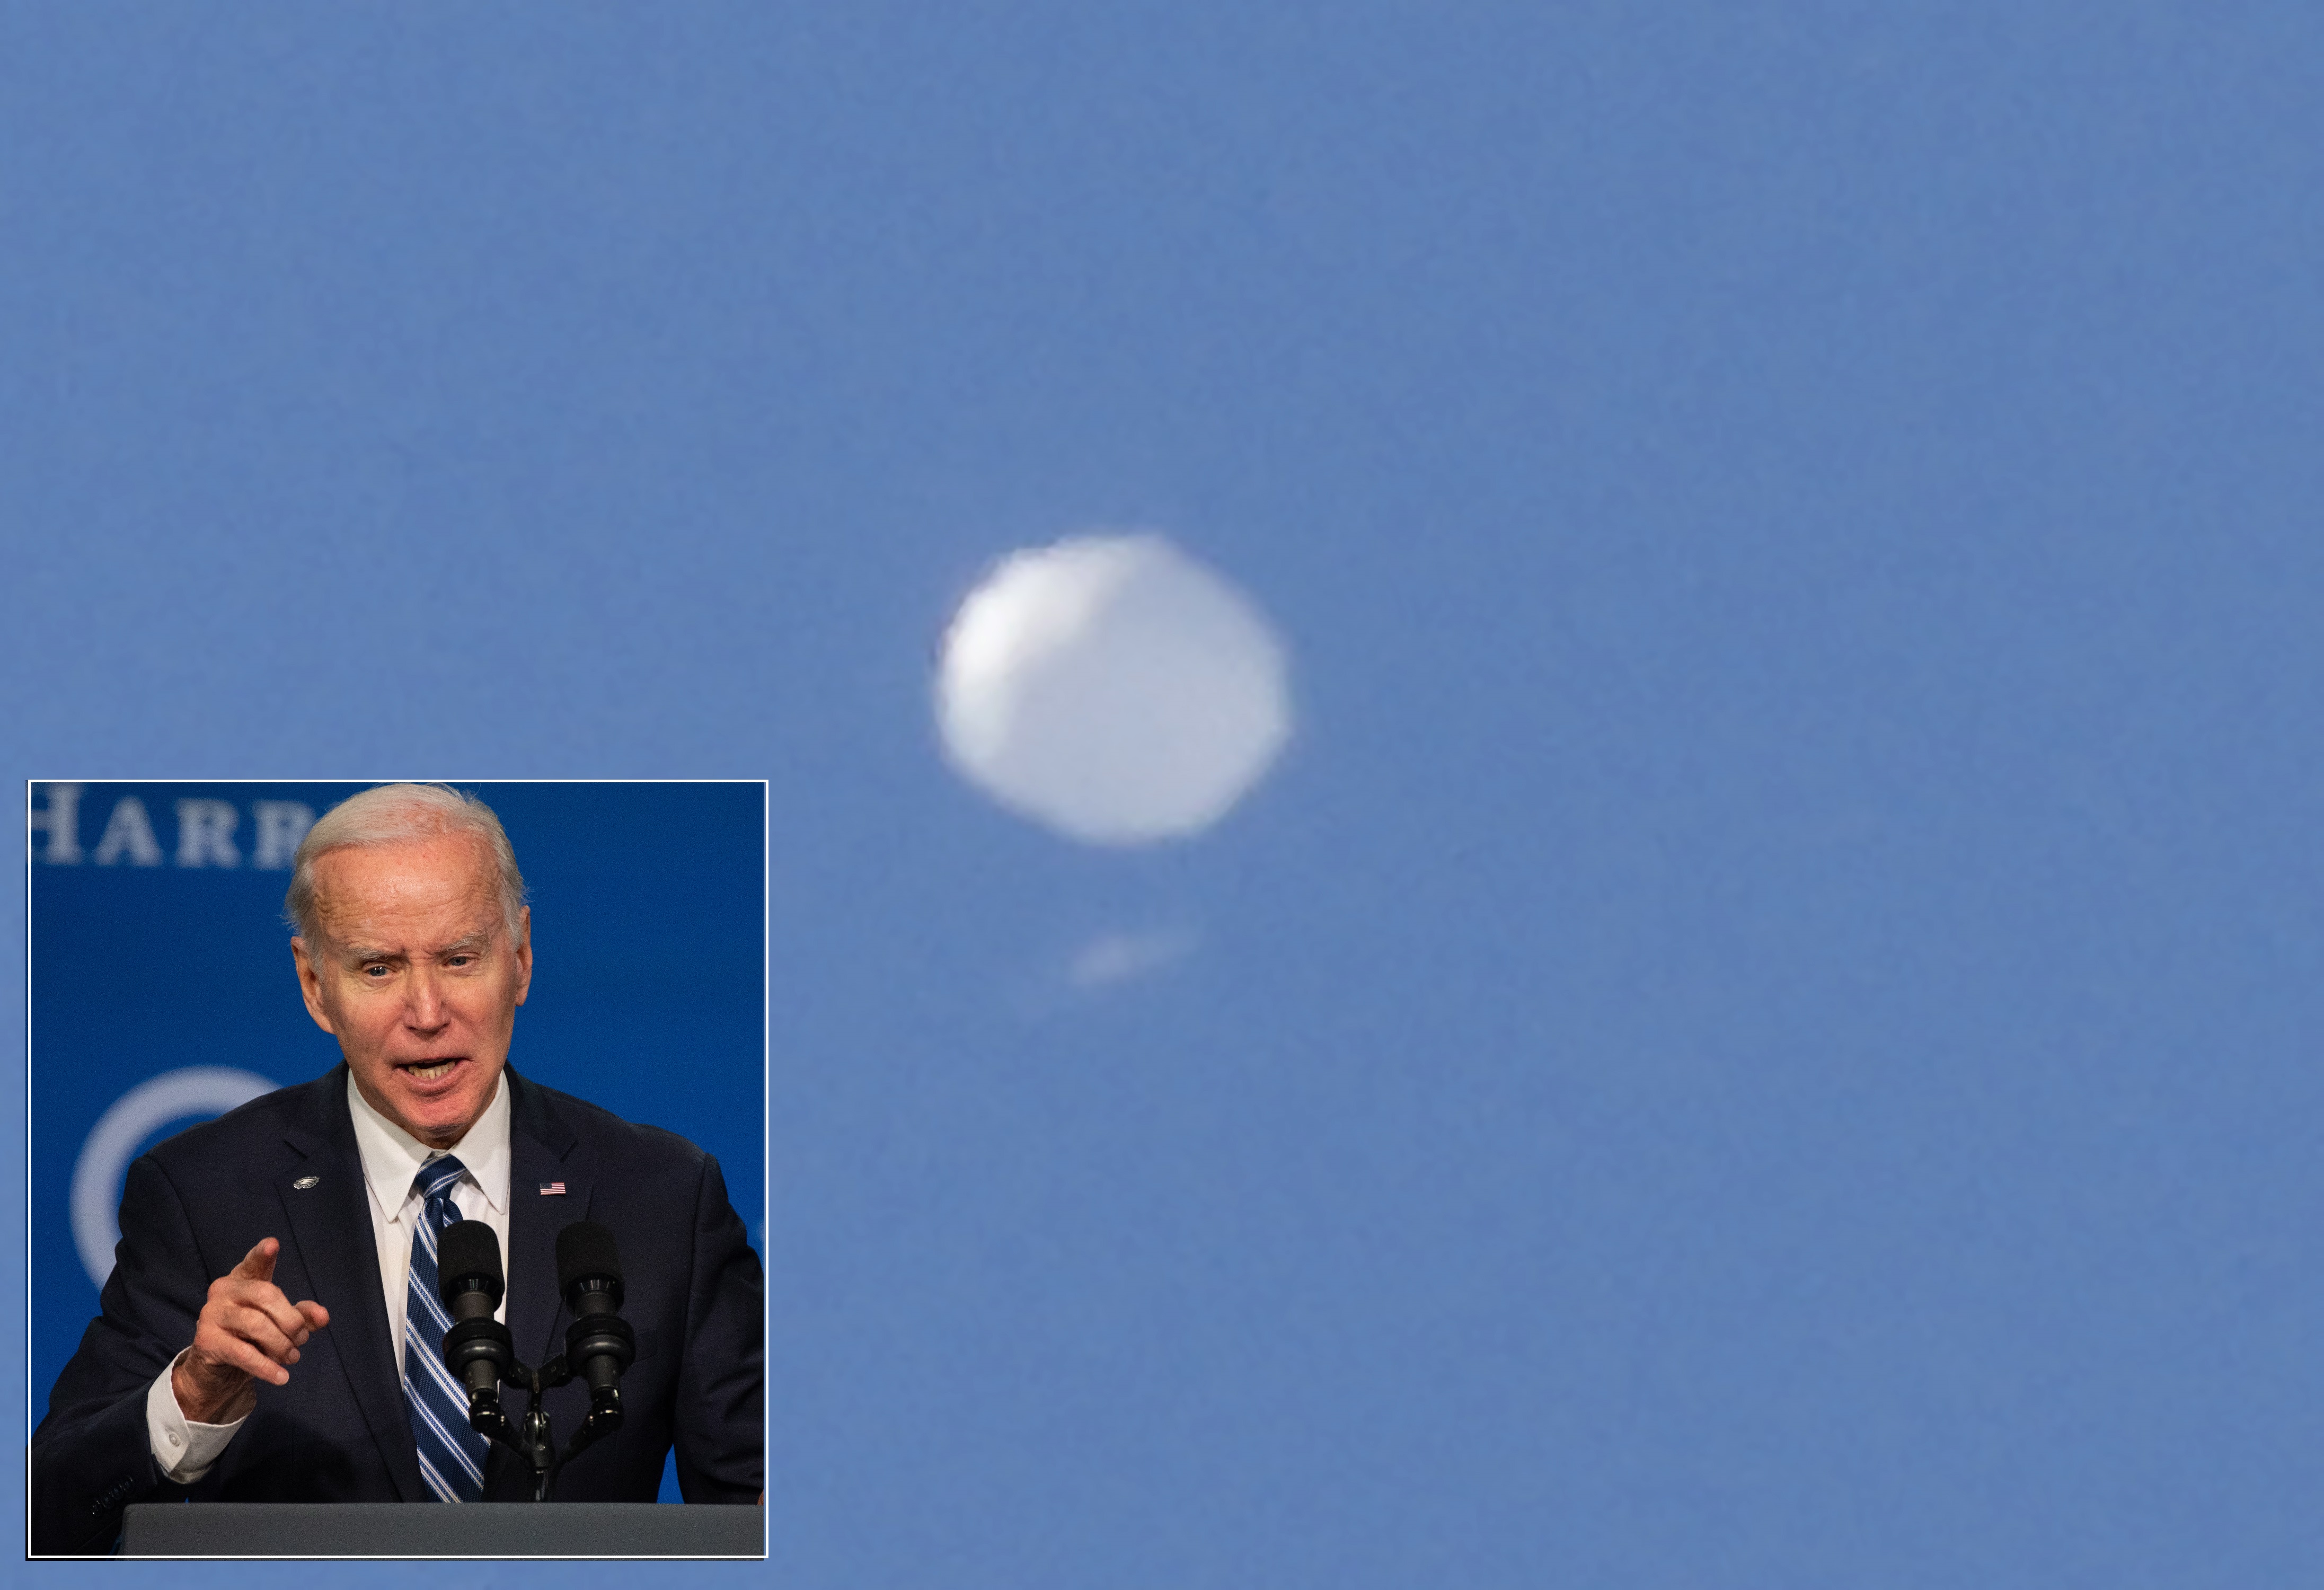 El globo espía chino fue derribado este sábado por orden directa de Joe Biden (en el recuadro).